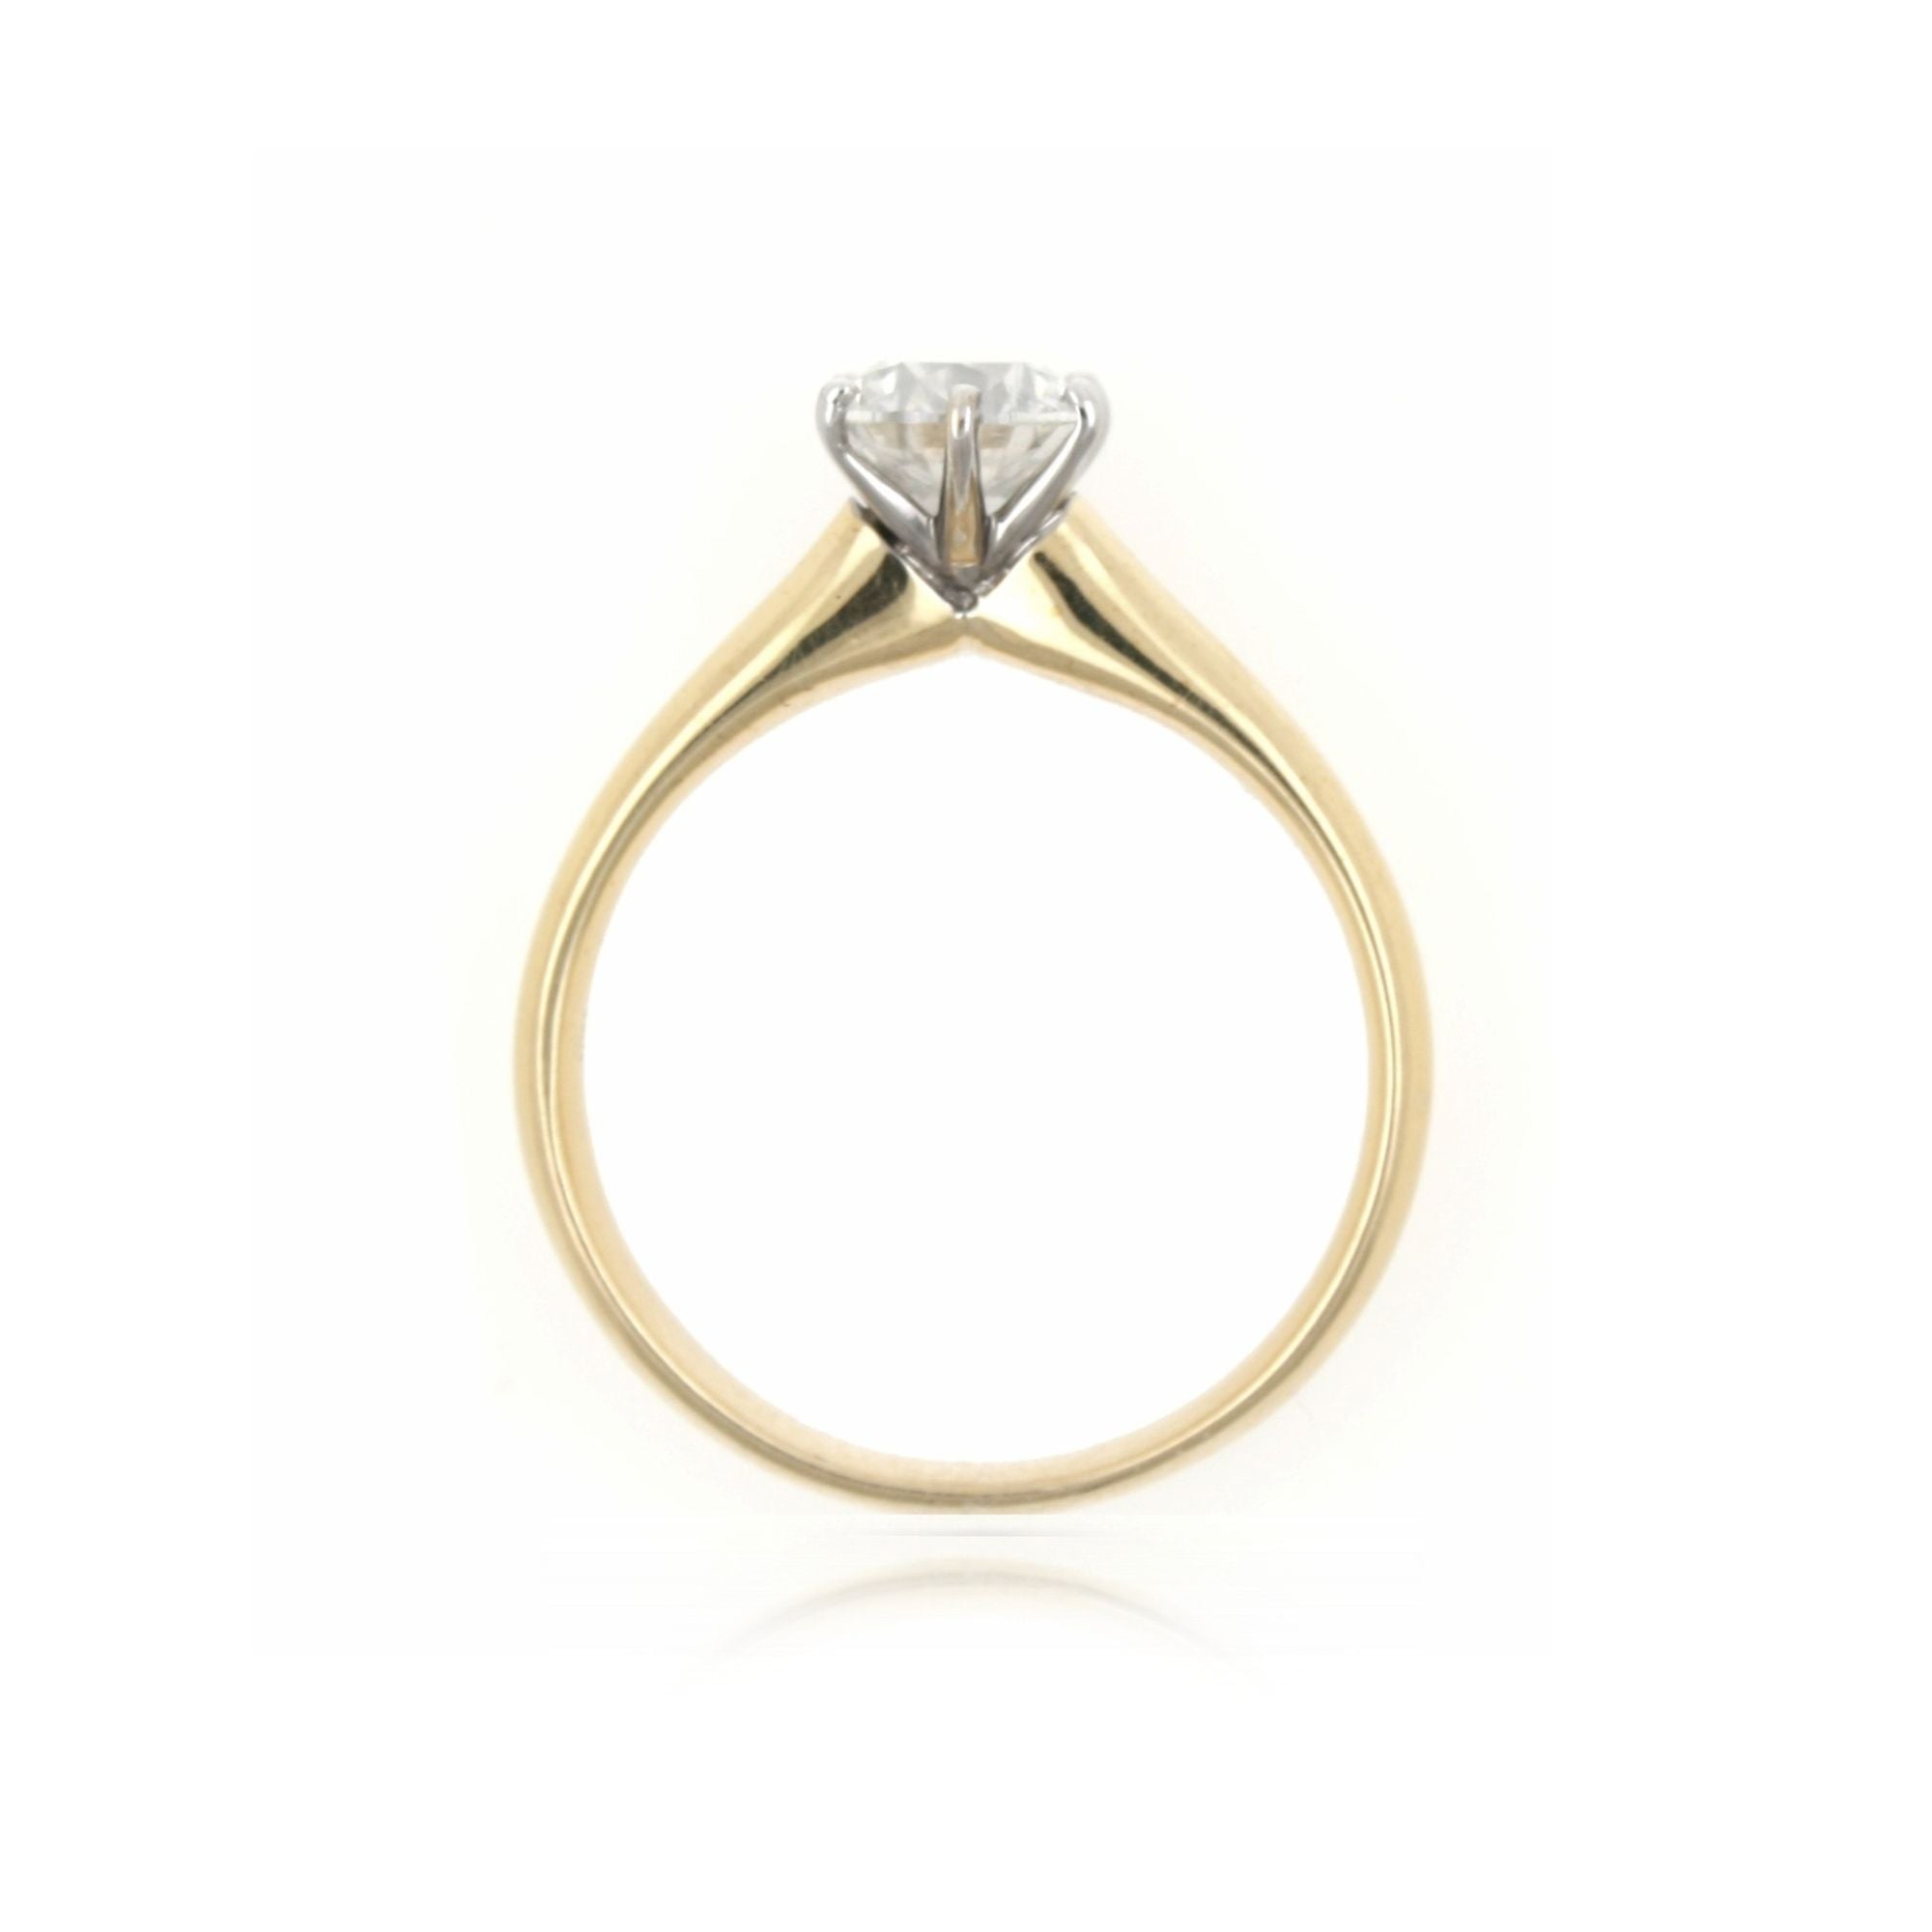 18ct Round Brilliant Cut Diamond Solitaire Ring - 1 carat